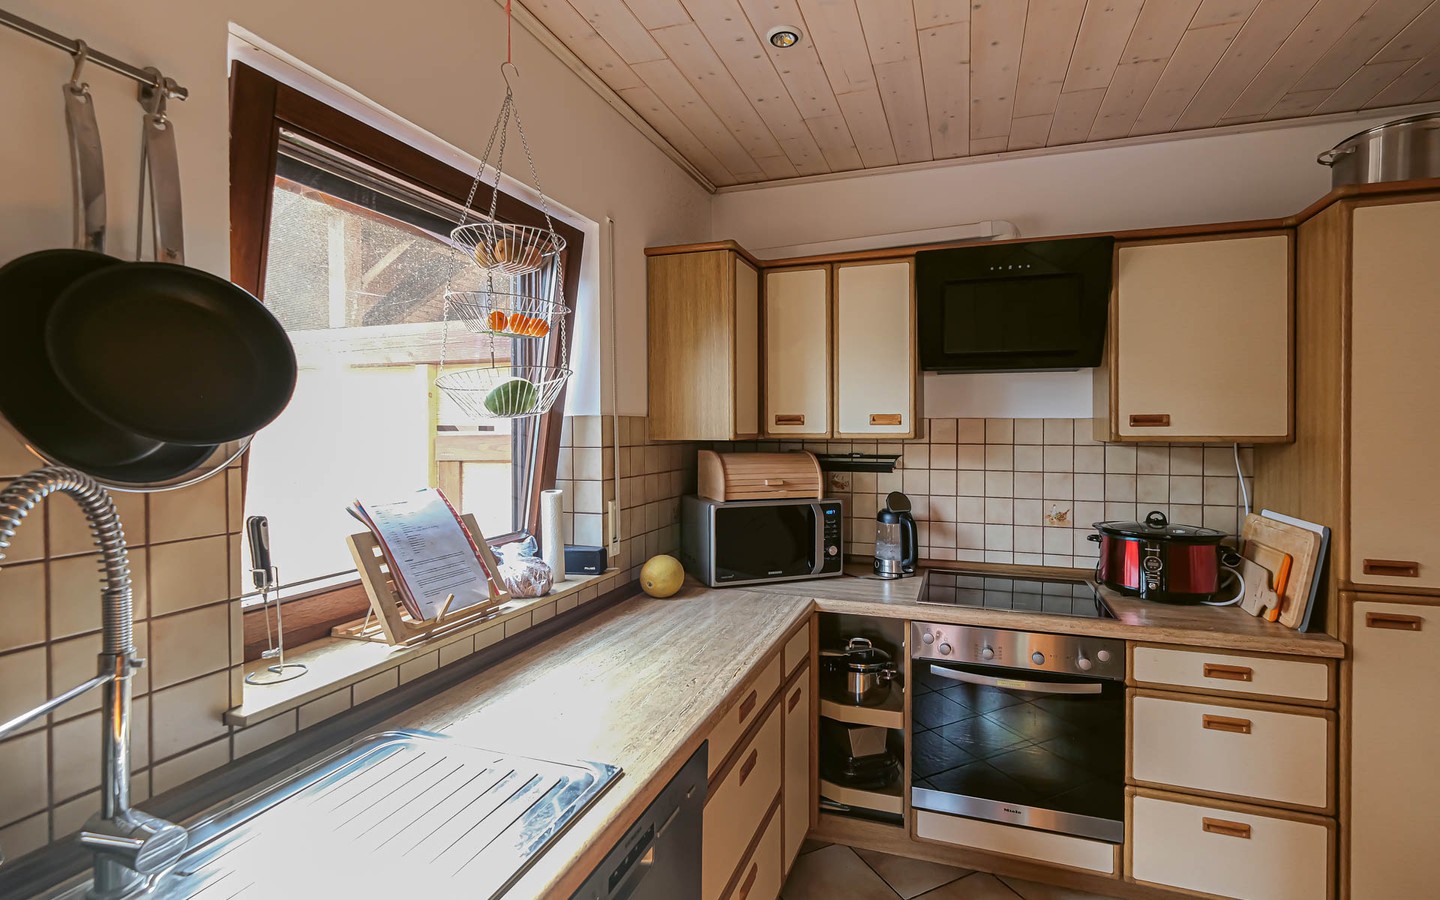 Küche - Pfaffengrund: Doppelhaushälfte mit gefälligem Grundriss und Einliegerwohnung